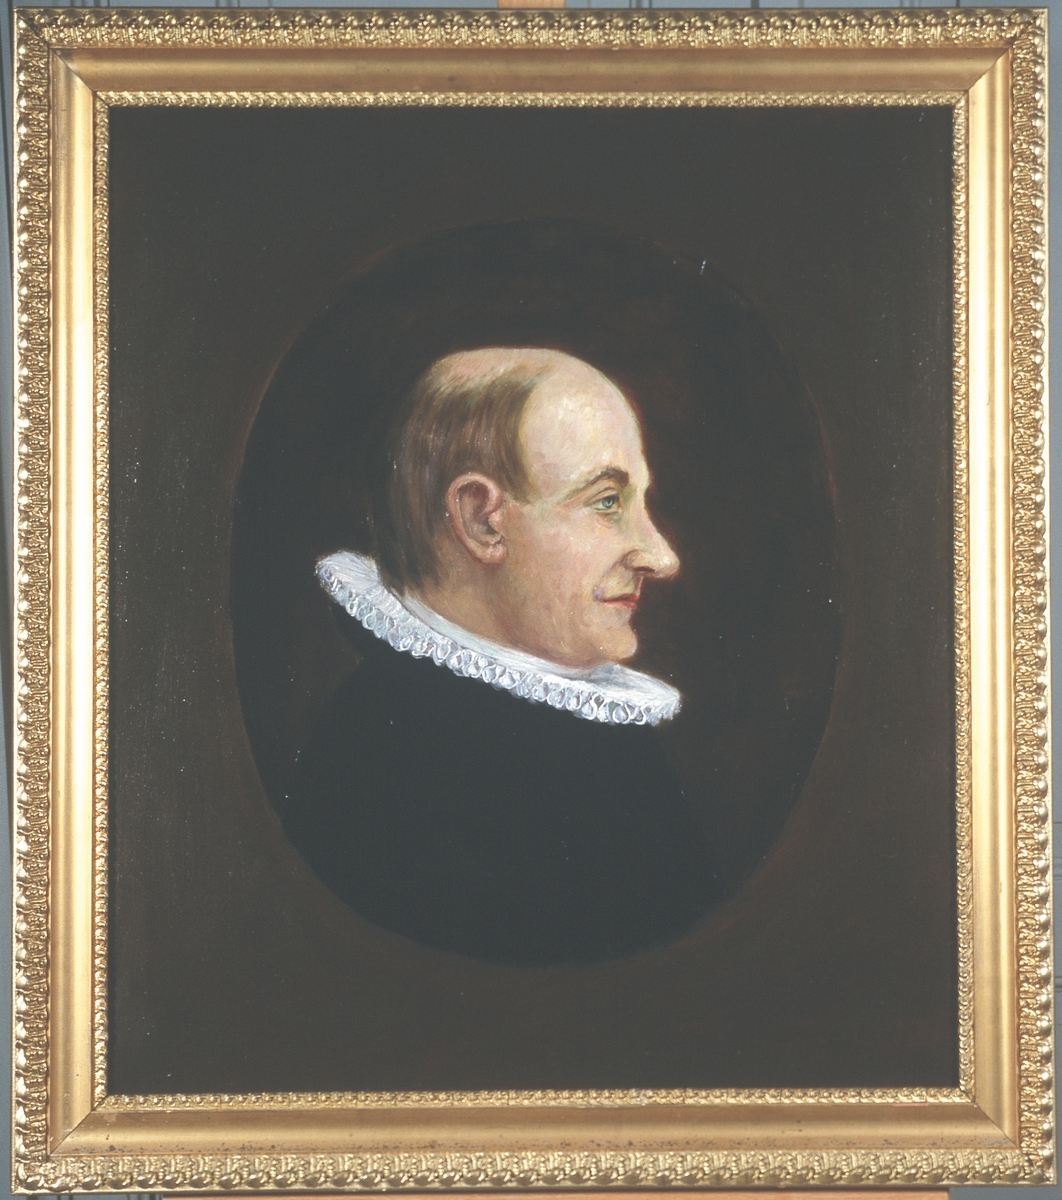 Portrett av eidsvollsmann og prest Georg B. Jersin
Mann med tynt hår, høy panne, profil, lang nese, prestekledd, innskrevet i oval.